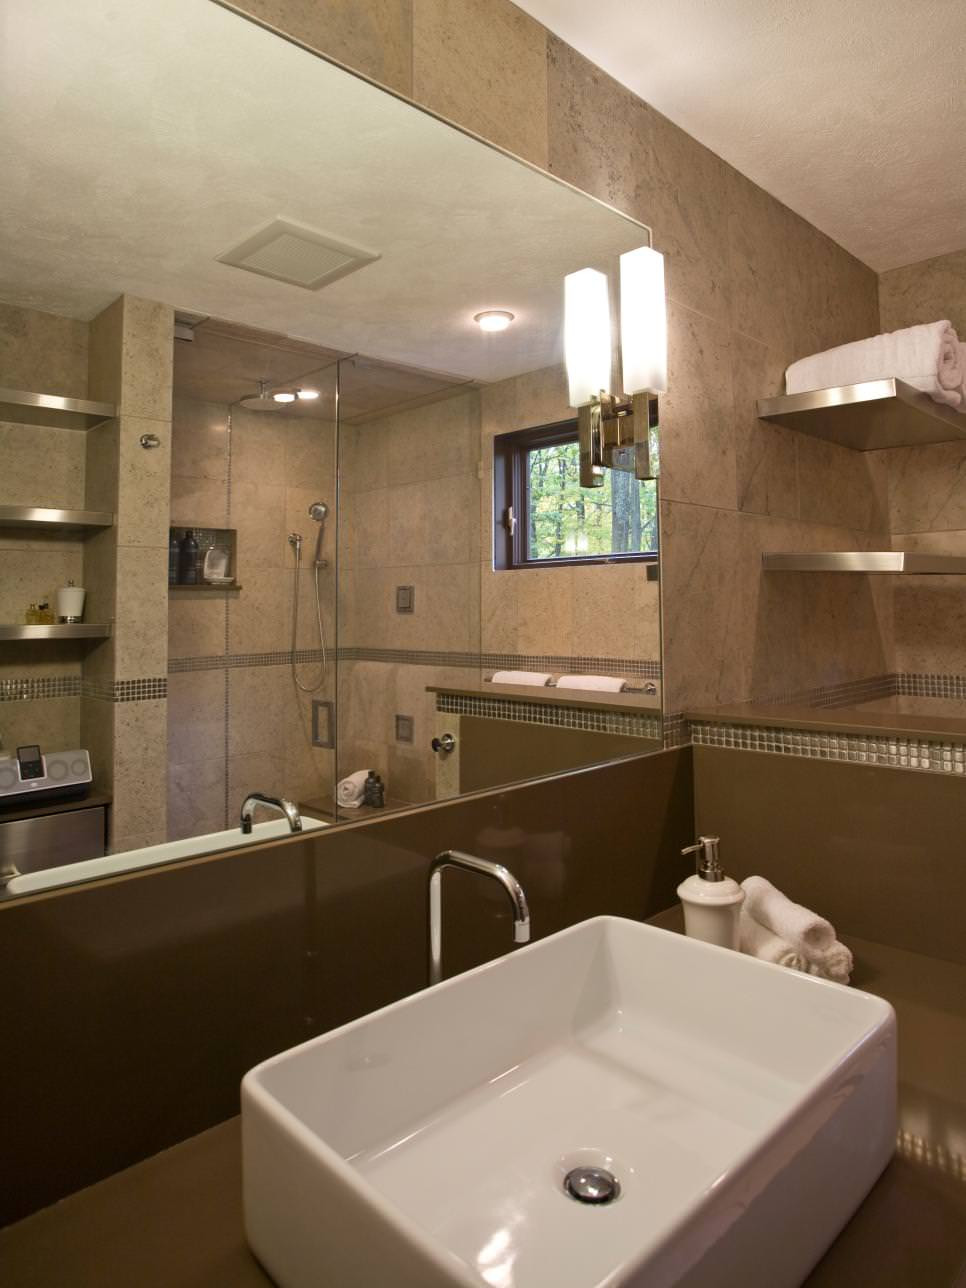 Spa Bathroom Design
 25 Spa Bathroom Designs Bathroom Designs